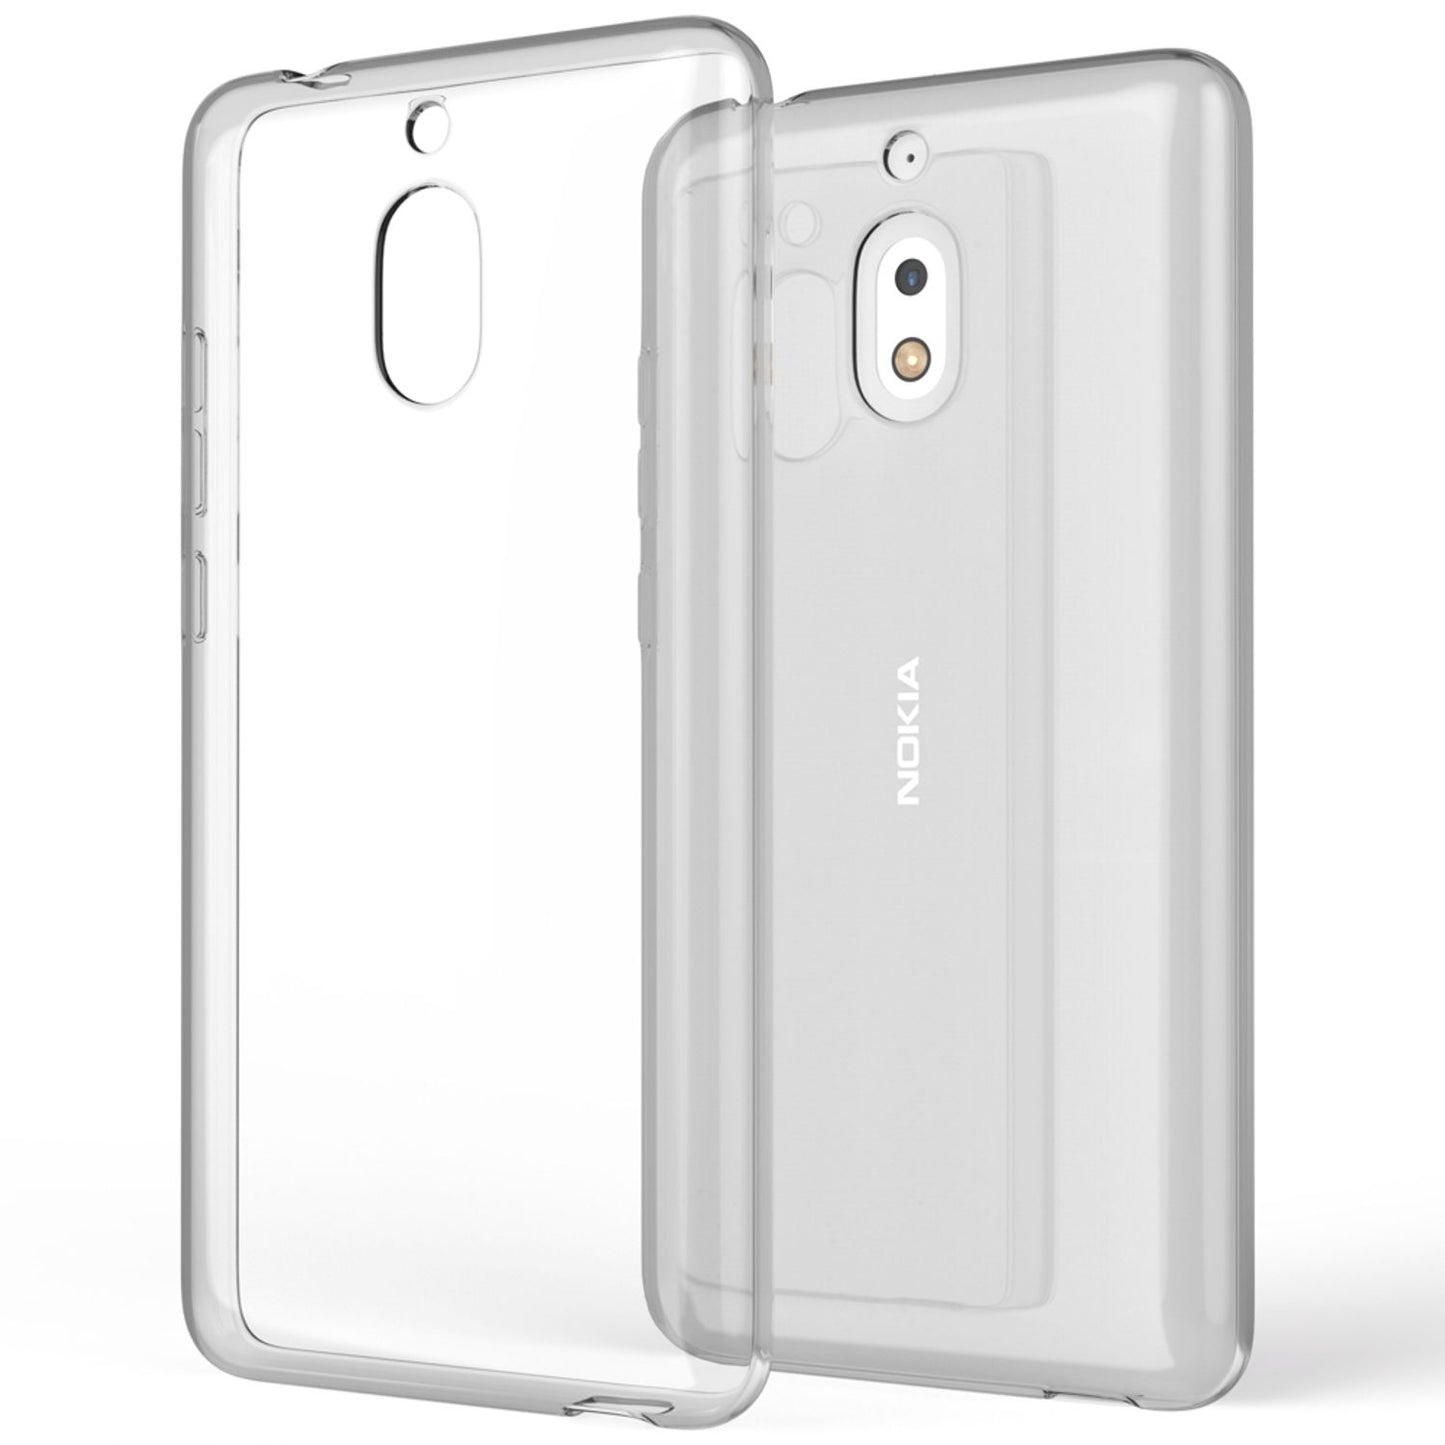 NALIA Handyhülle für Nokia 2.1 2018, Hülle TPU Silikon Case Cover Crystal Clear